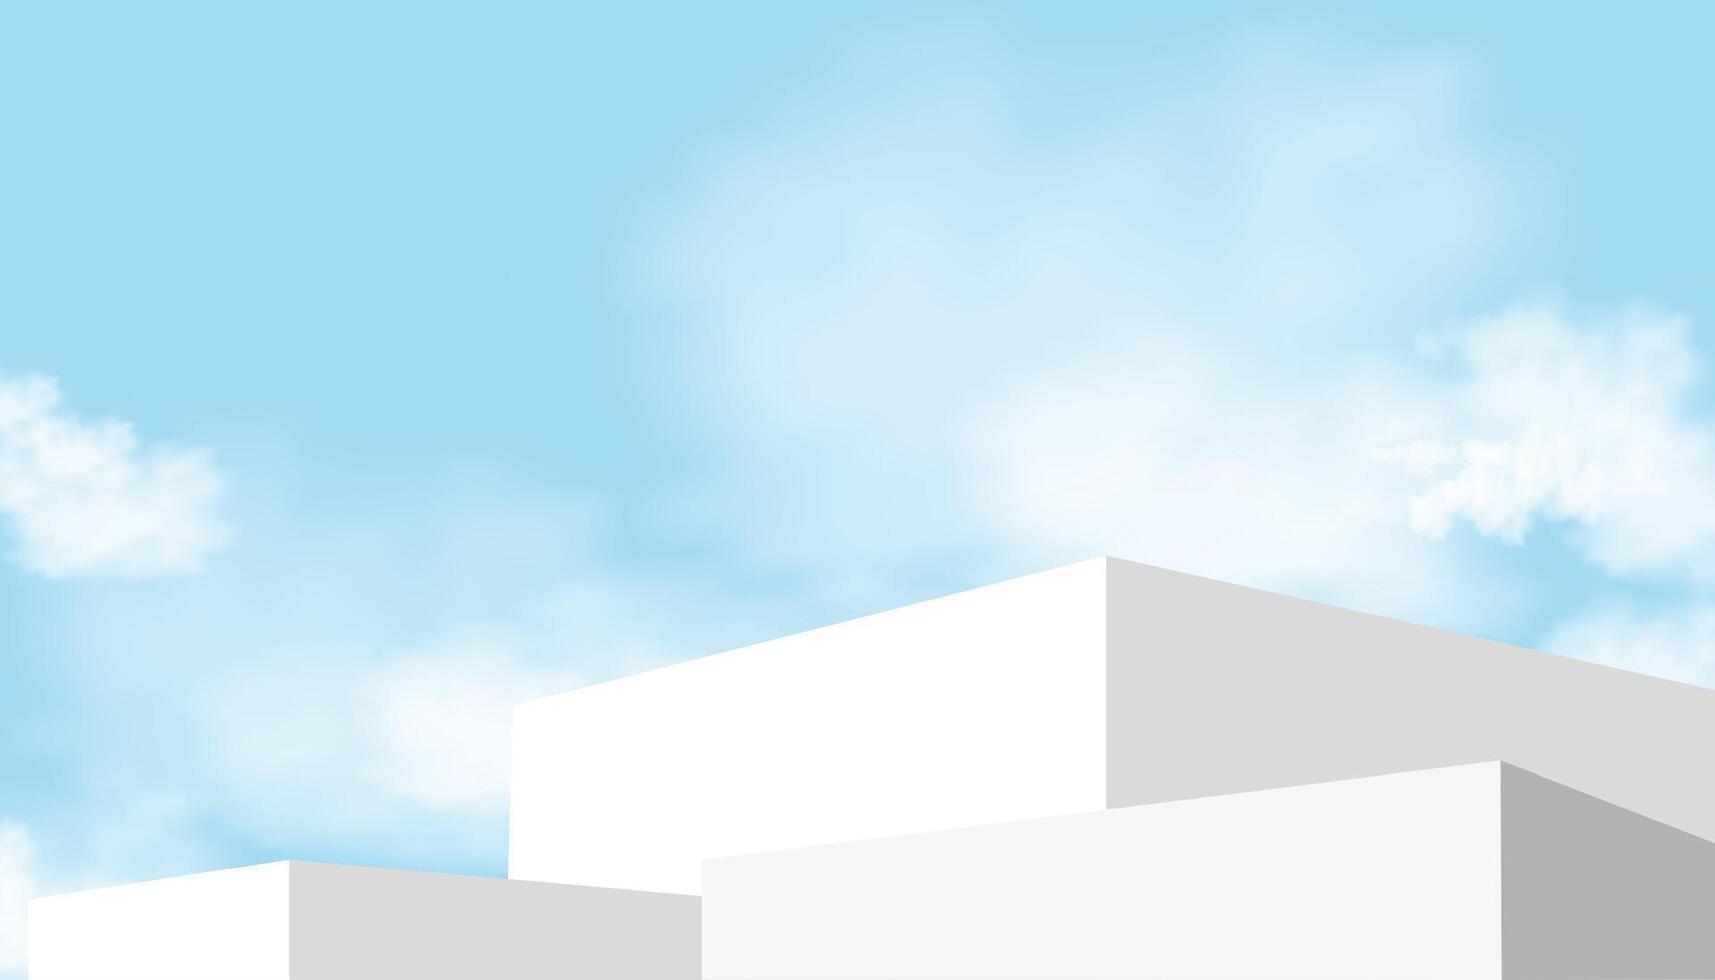 blanco podio paso en cielo azul y nube fondo,plataforma 3d Bosquejo monitor paso para verano cosmético producto presentación para venta, promoción, web en línea, escena naturaleza primavera cielo con edificio pared vector